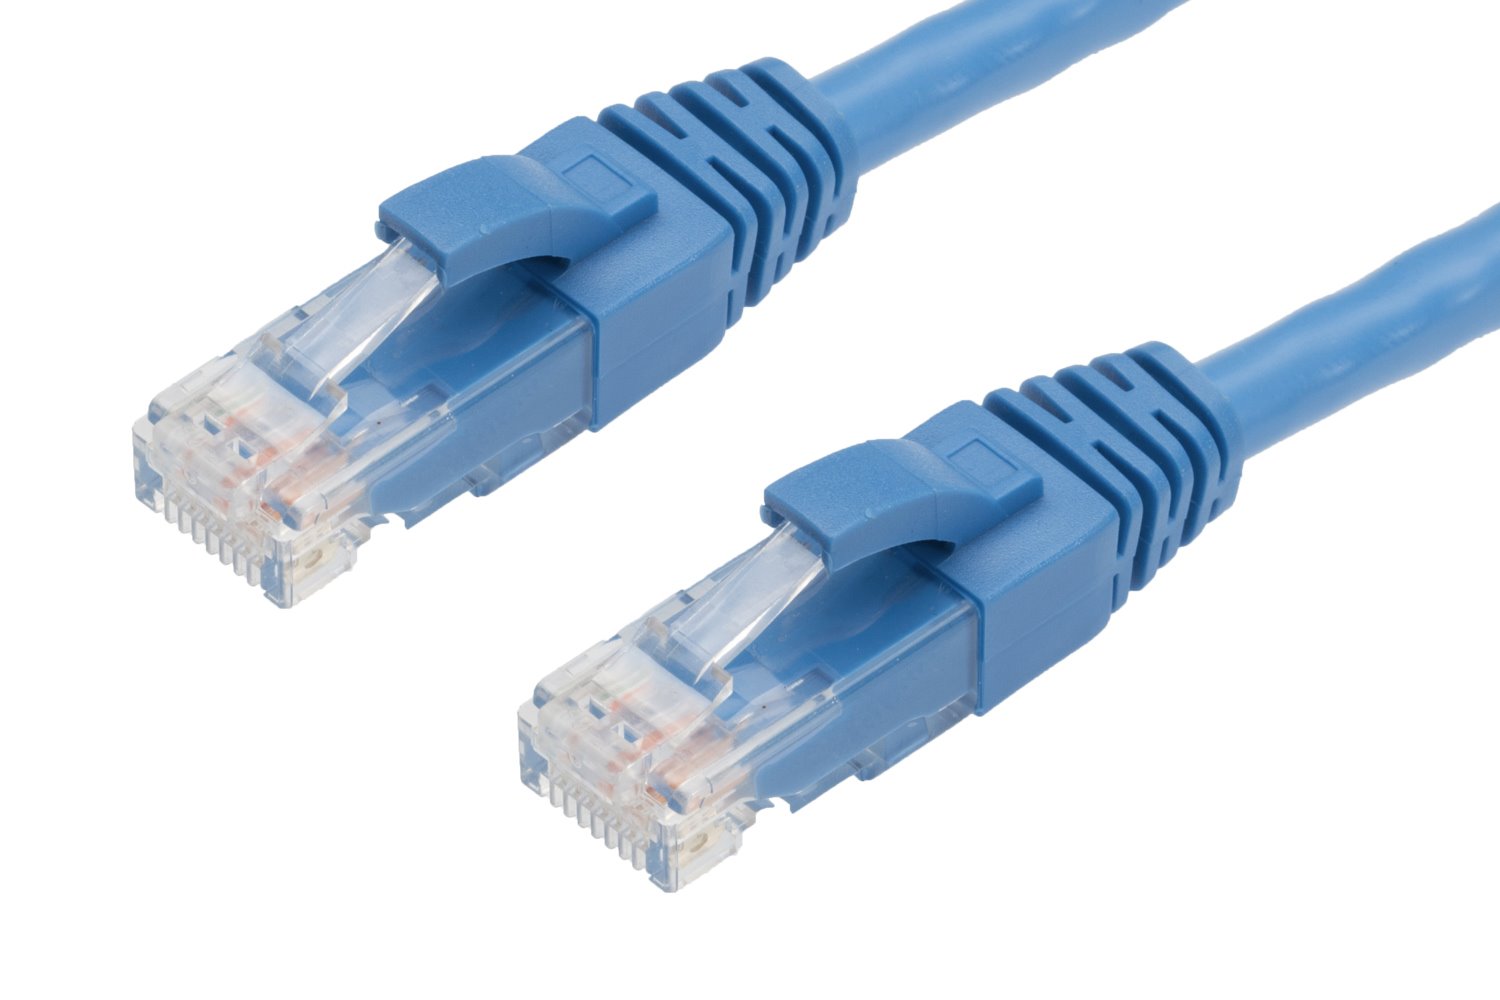 4Cabling 10M RJ45 Cat6 Ethernet Cable. Blue